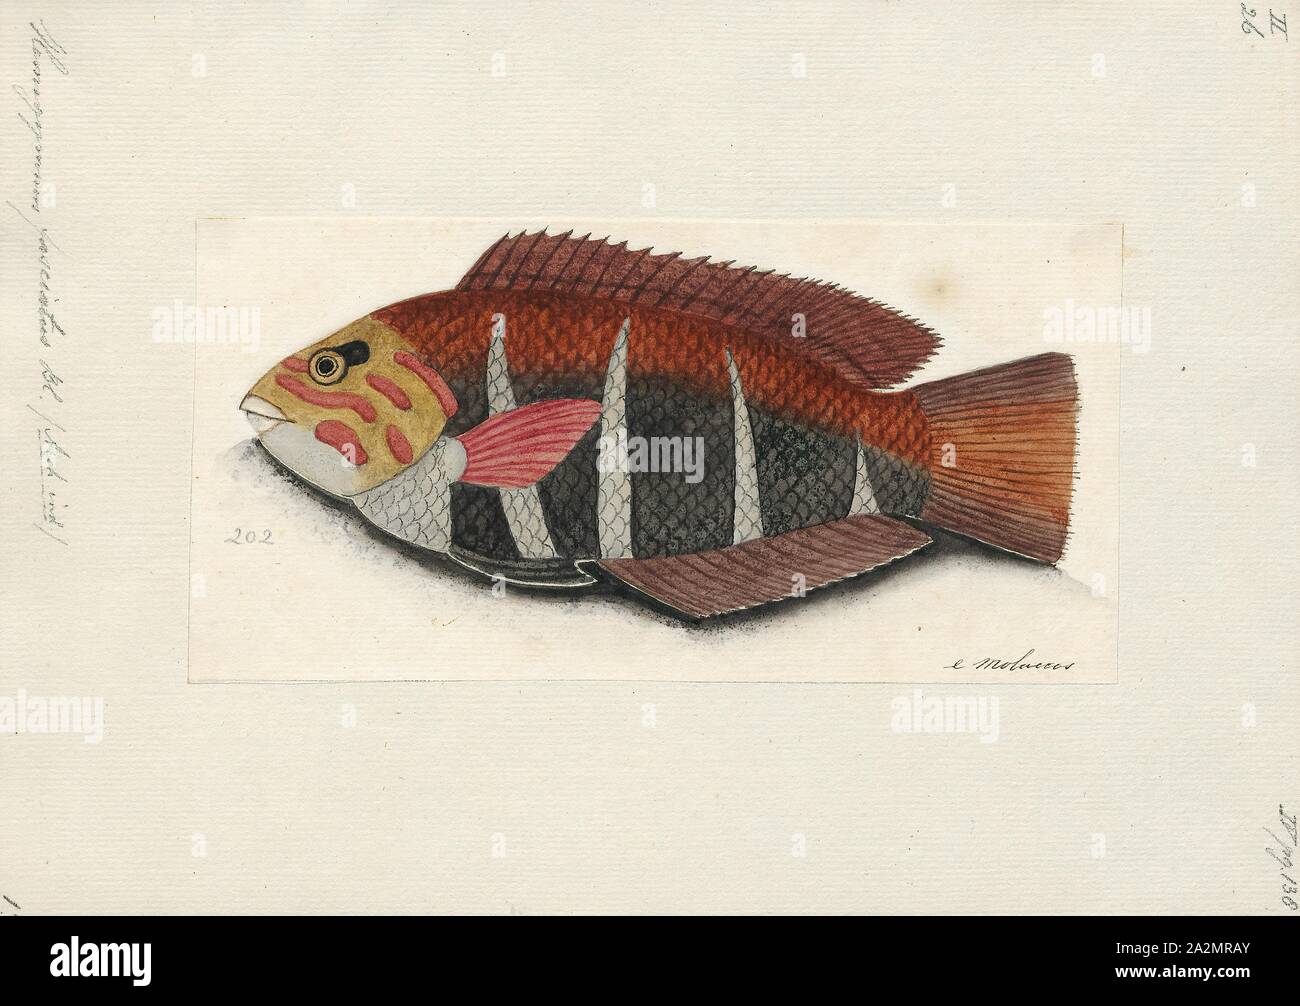 Hemigymnus fasciatus, Drucken, die gesperrte thicklip Lippfisch, Hemigymnus fasciatus, ist eine Art von Fischen Der lippfisch Familie, native aus dem Indopazifik., 1700-1880 Stockfoto